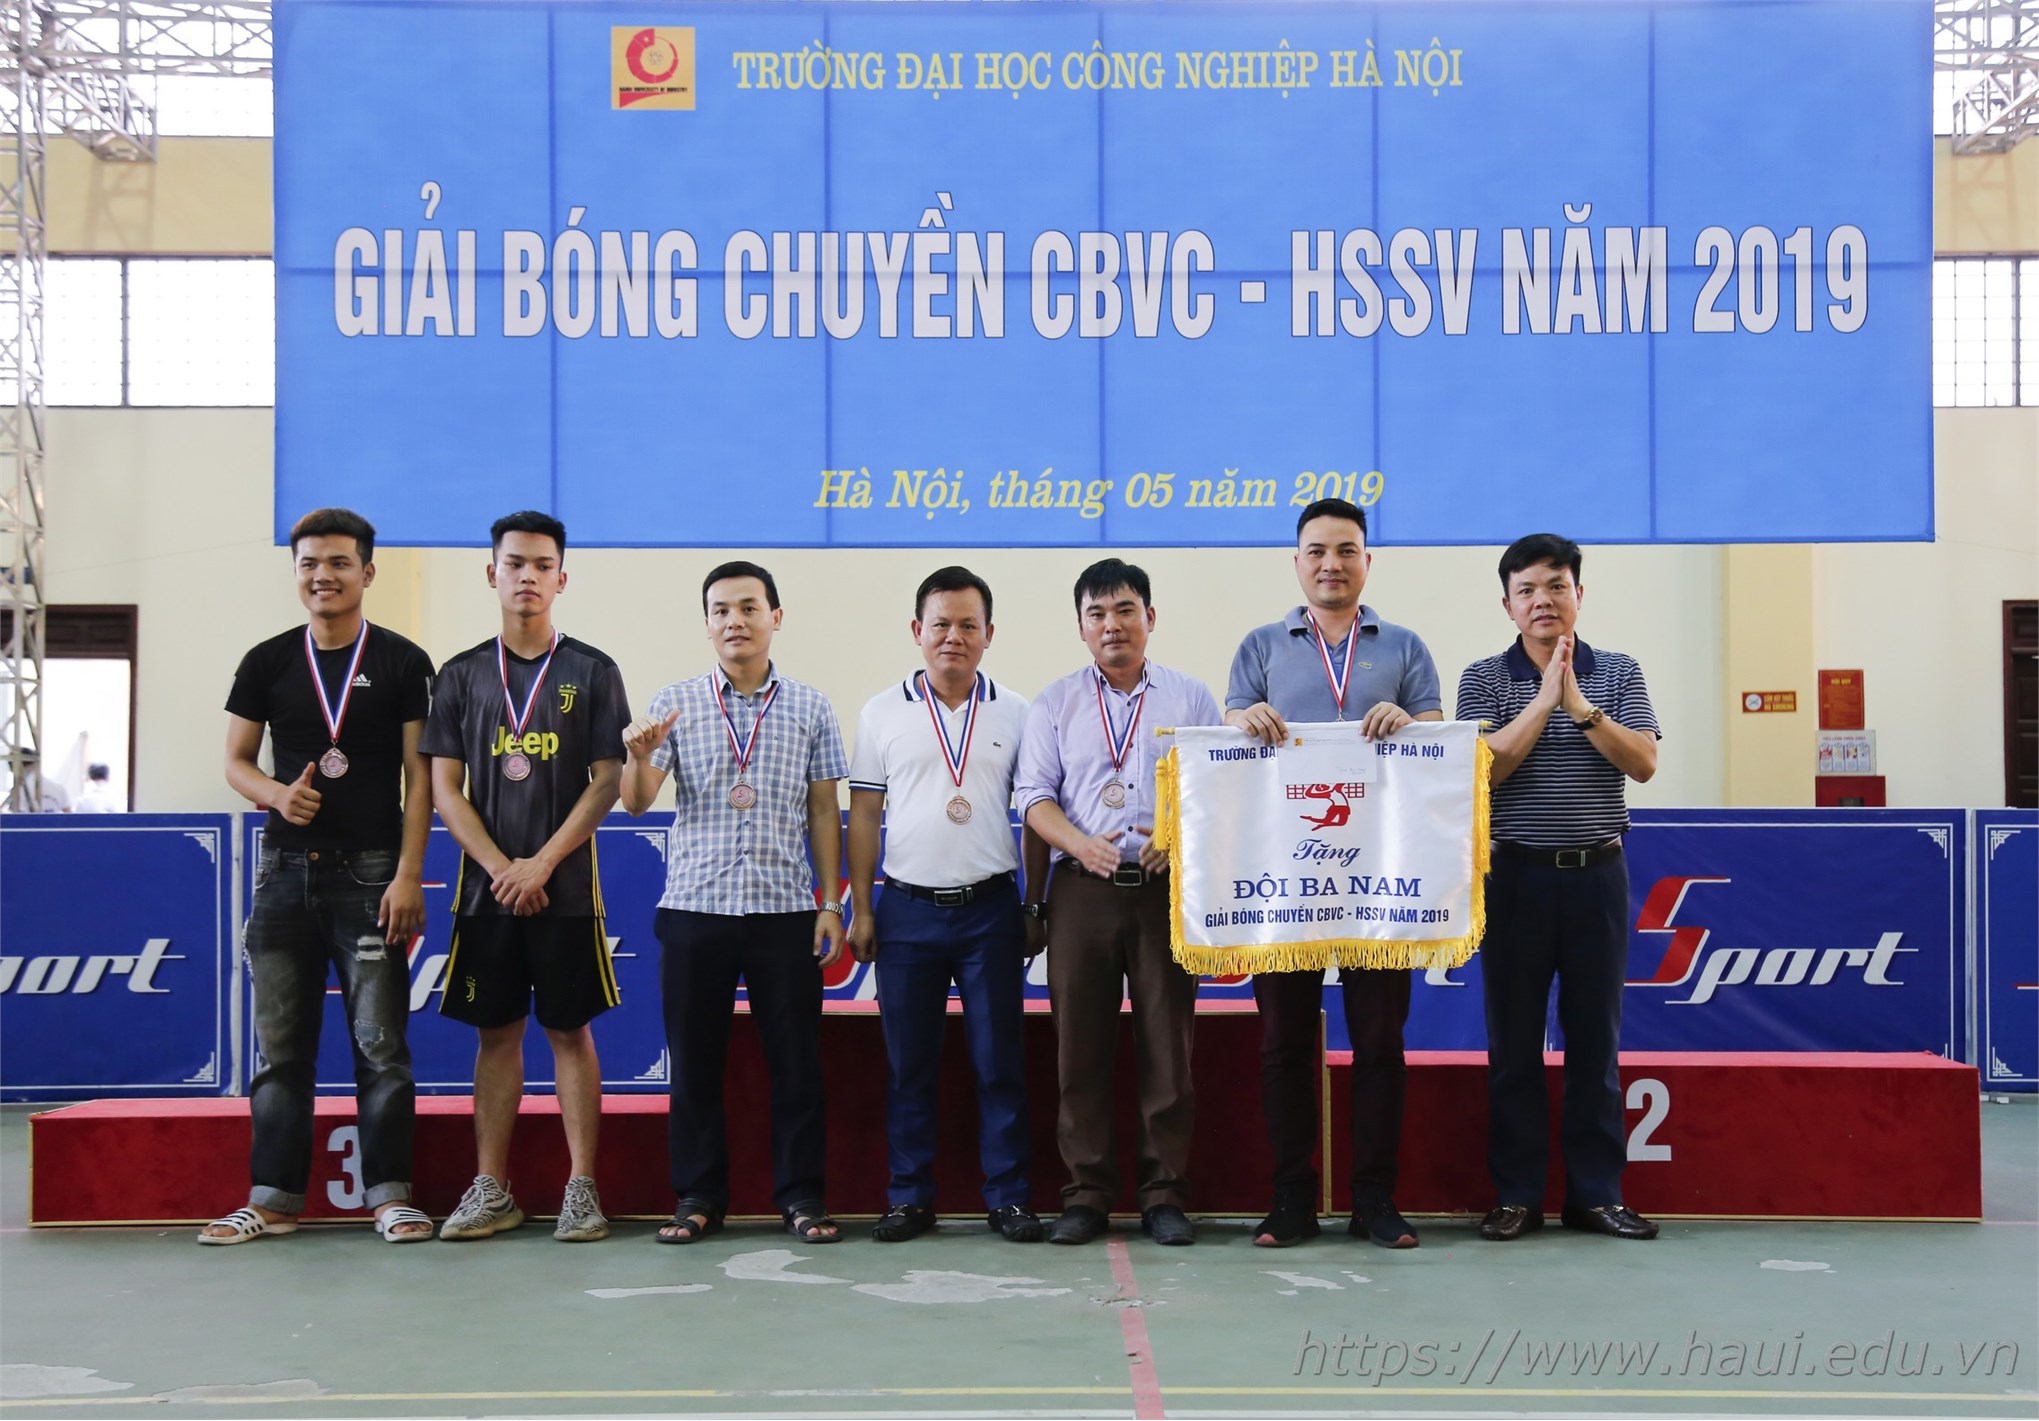 Giải bóng chuyền CBVC-HSSV Đại học Công nghiệp Hà Nội 2019